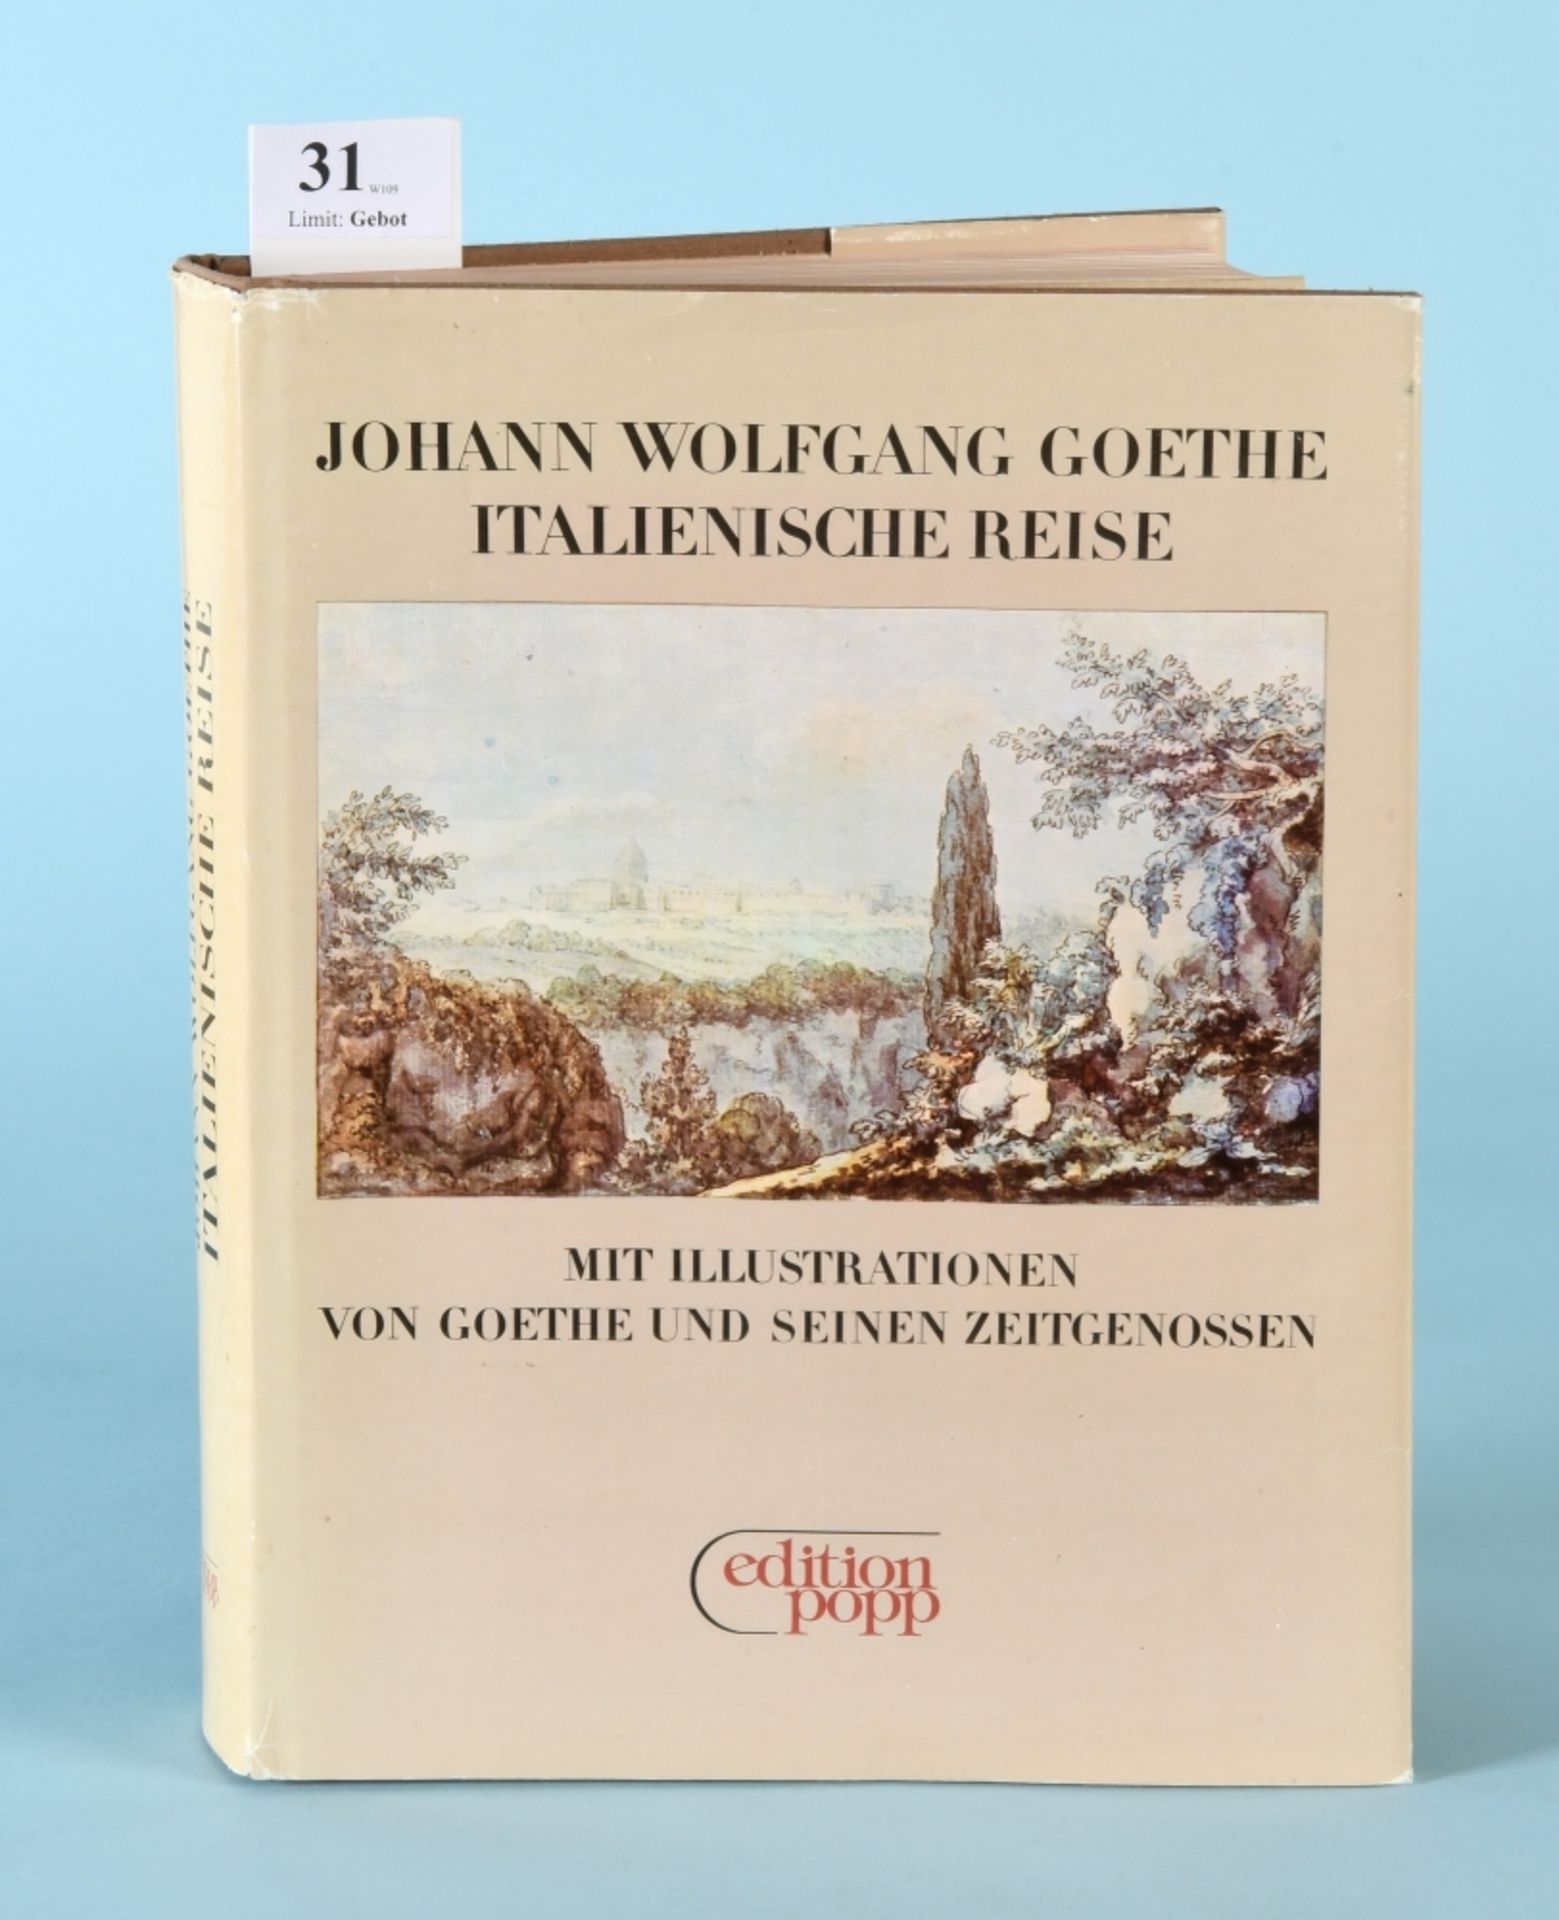 Goethe, Johann Wolfgang "Italienische Reise"